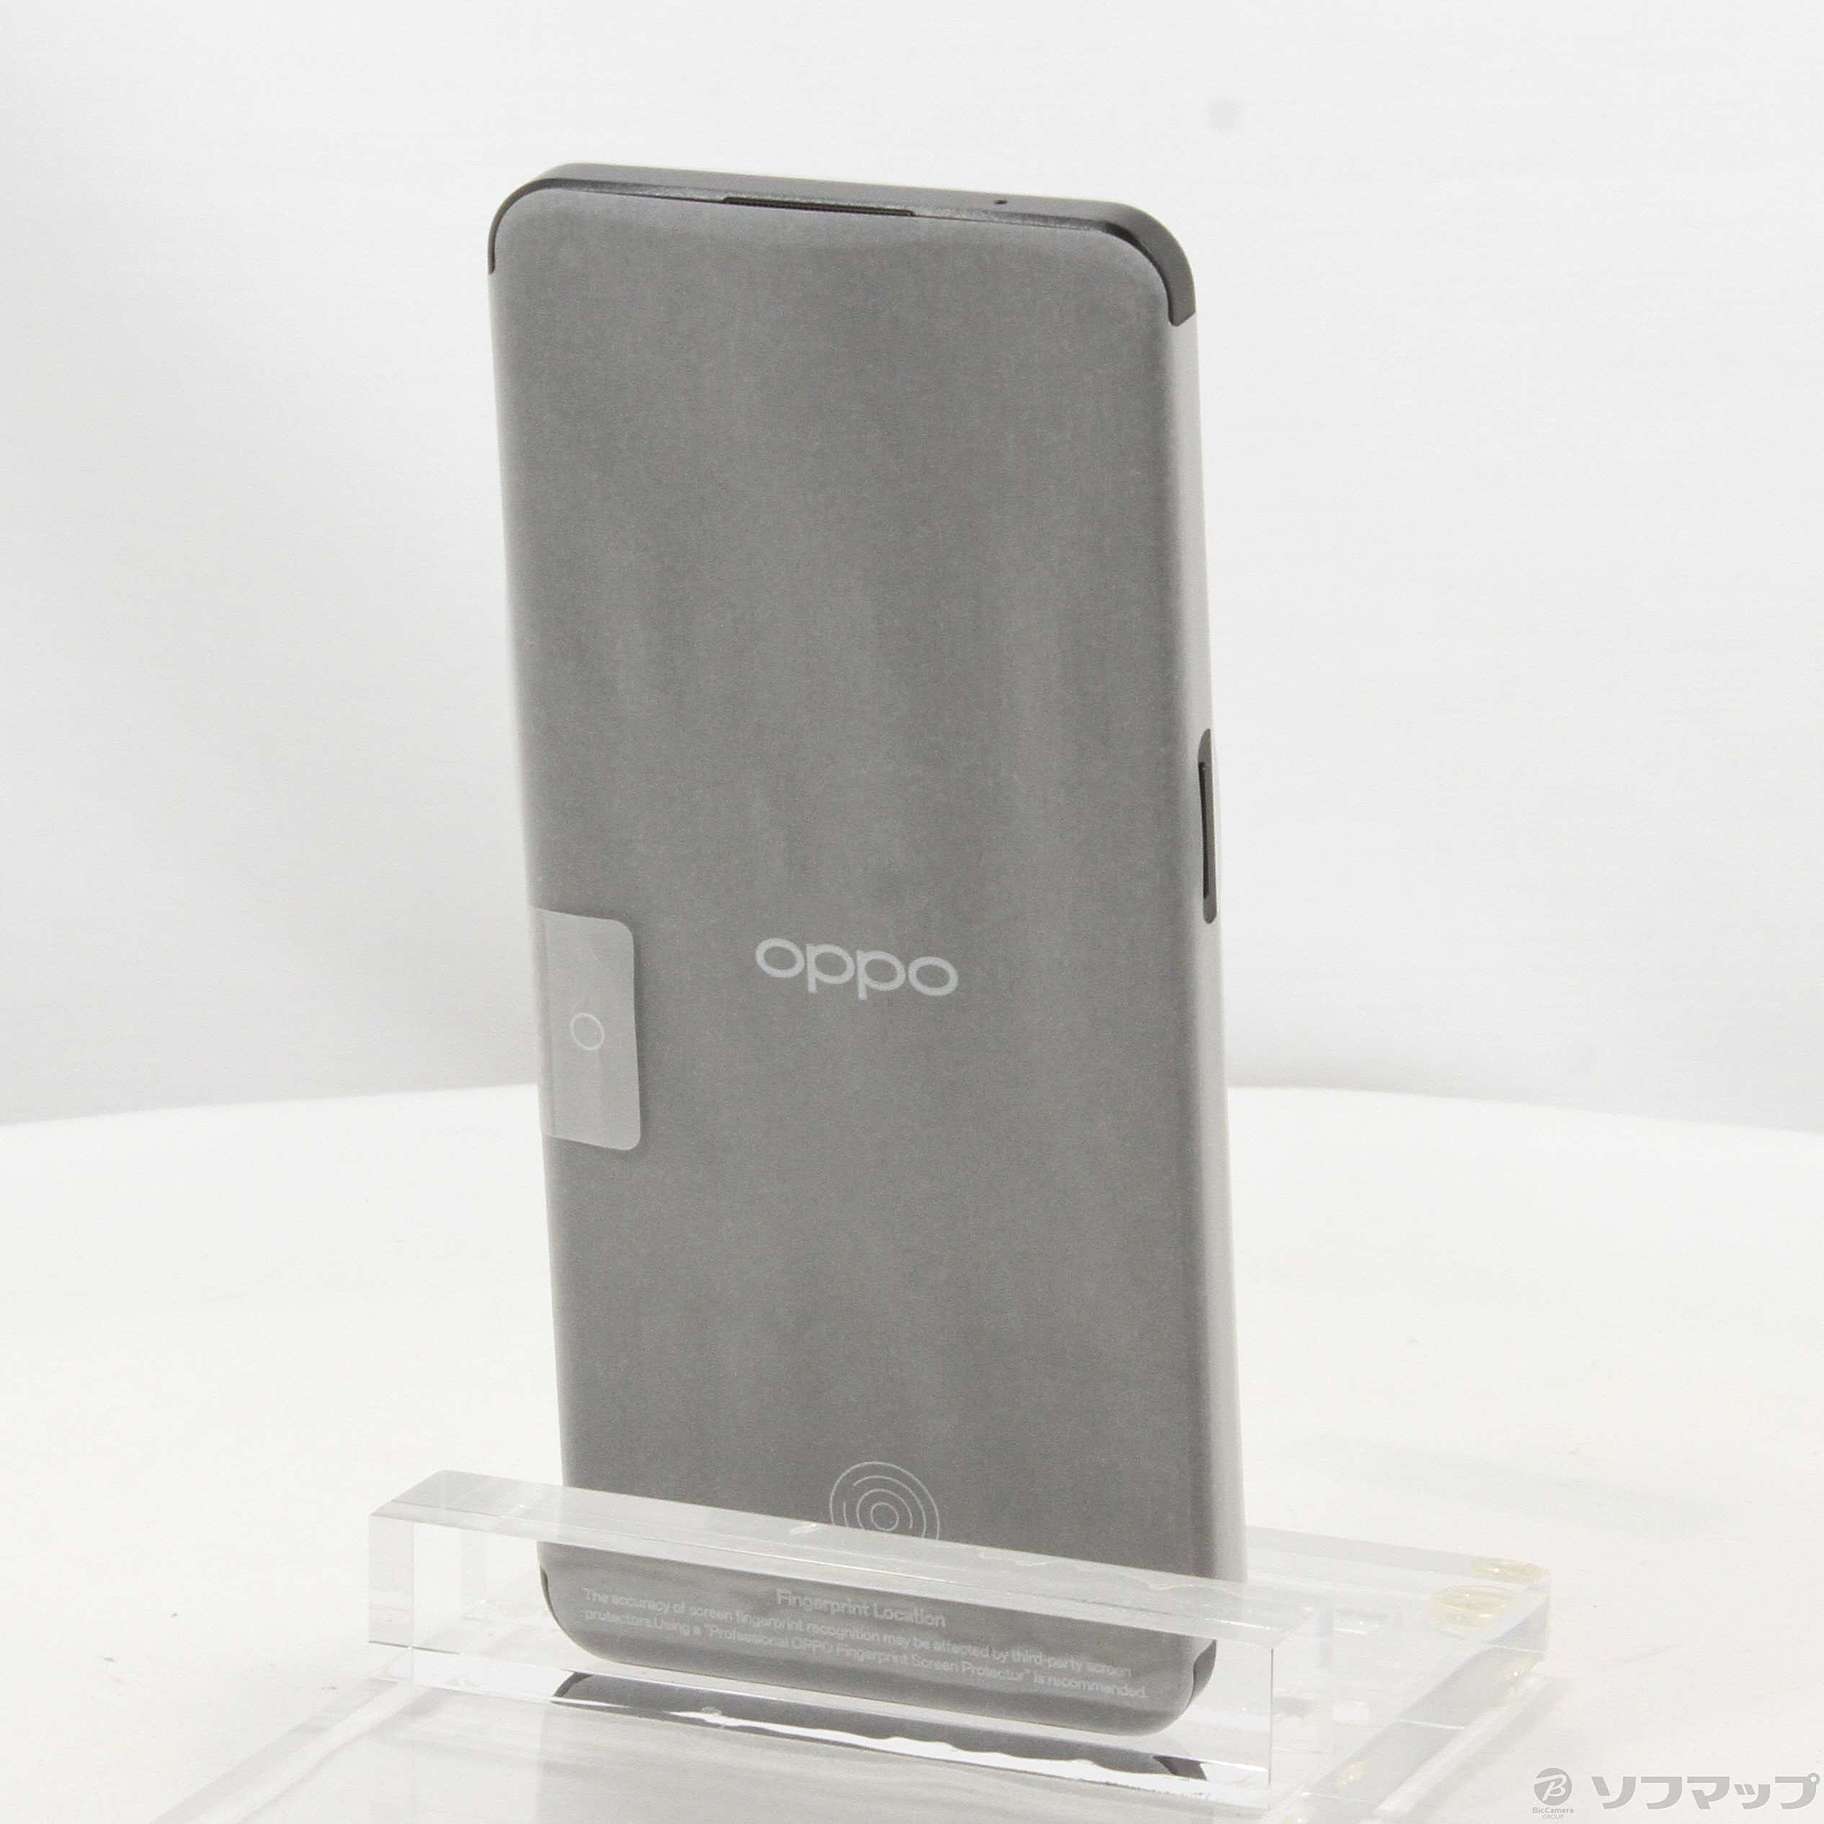 中古】OPPO Reno9 A 128GB ナイトブラック A301OP Y!mobile ...